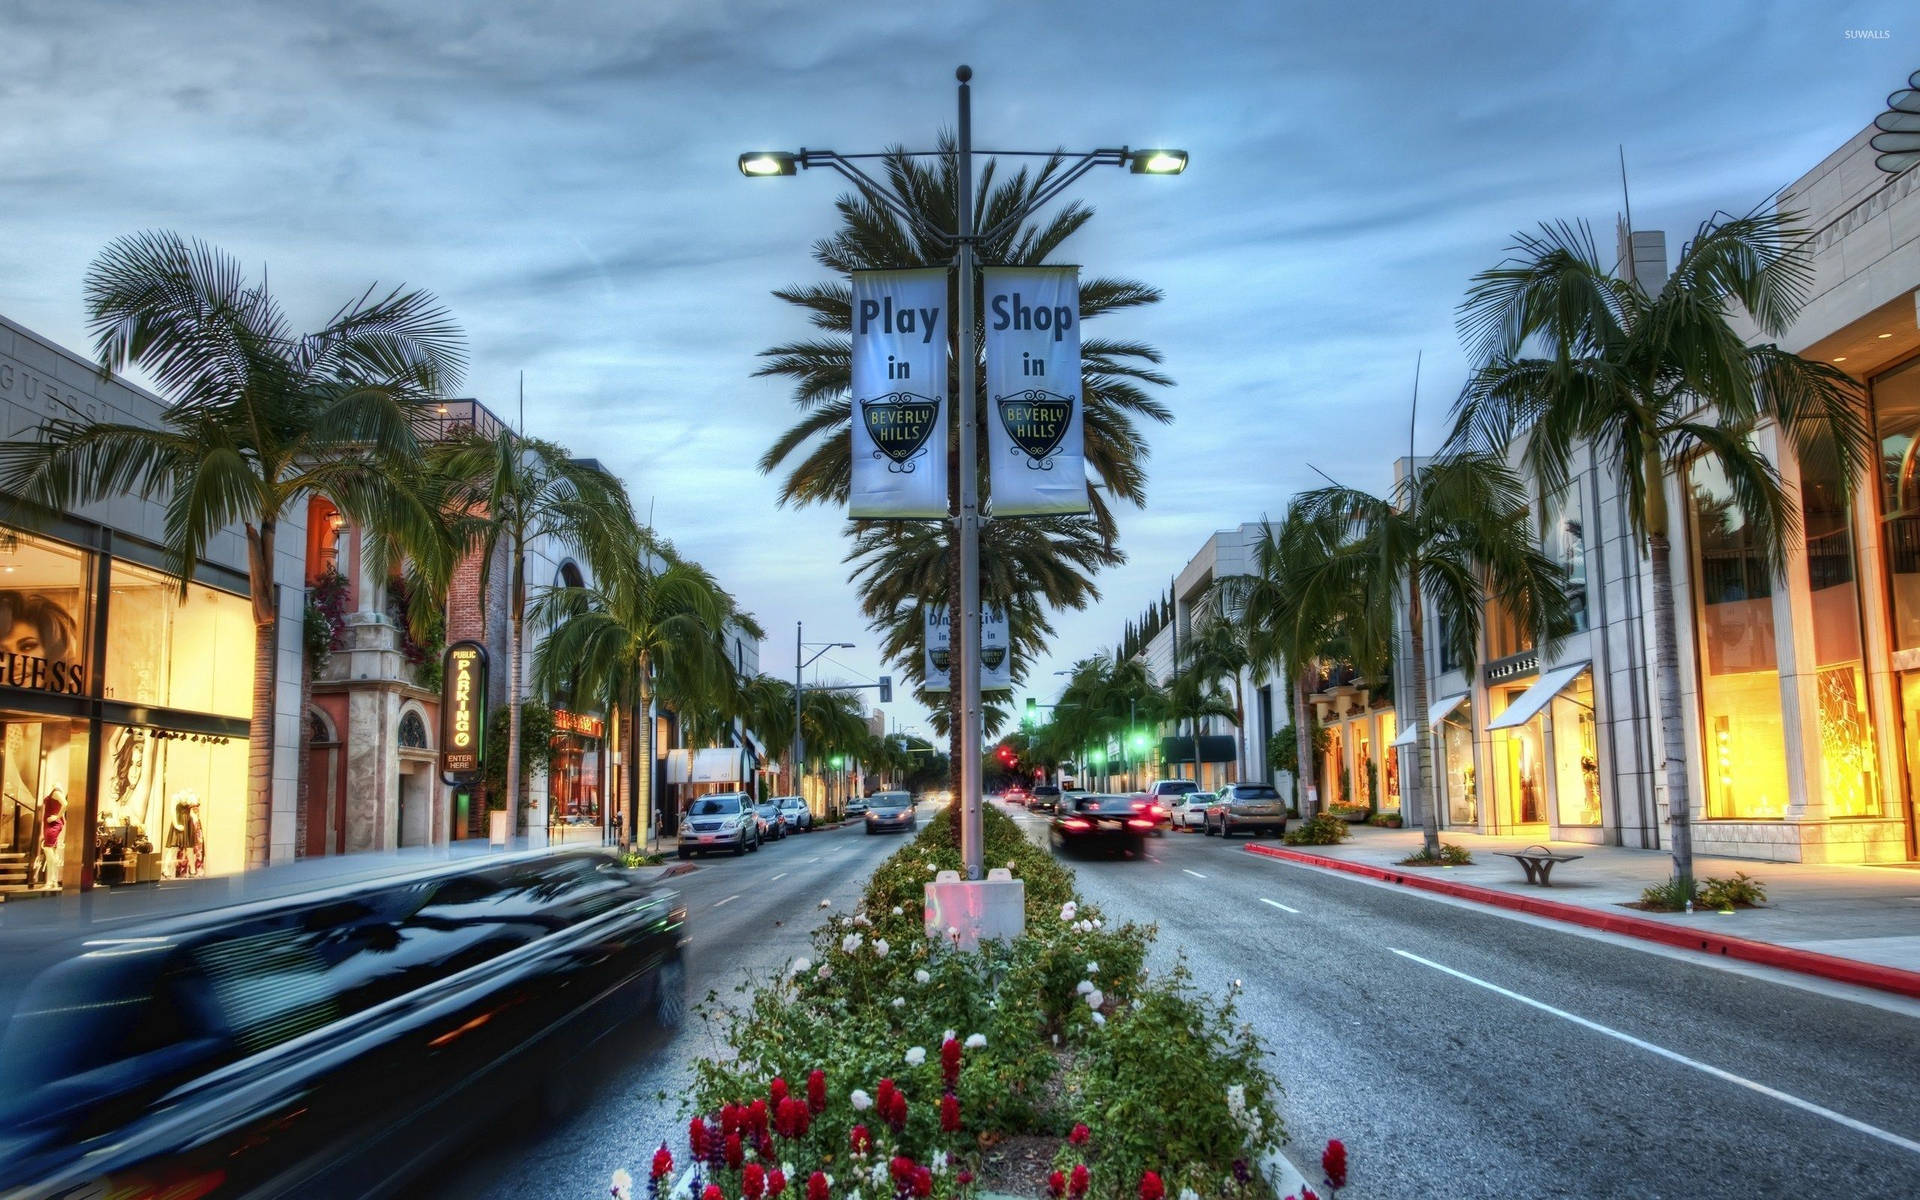 Hollywoodstreet Road Planters - Hollywood-gatan Vägplanteringar Wallpaper